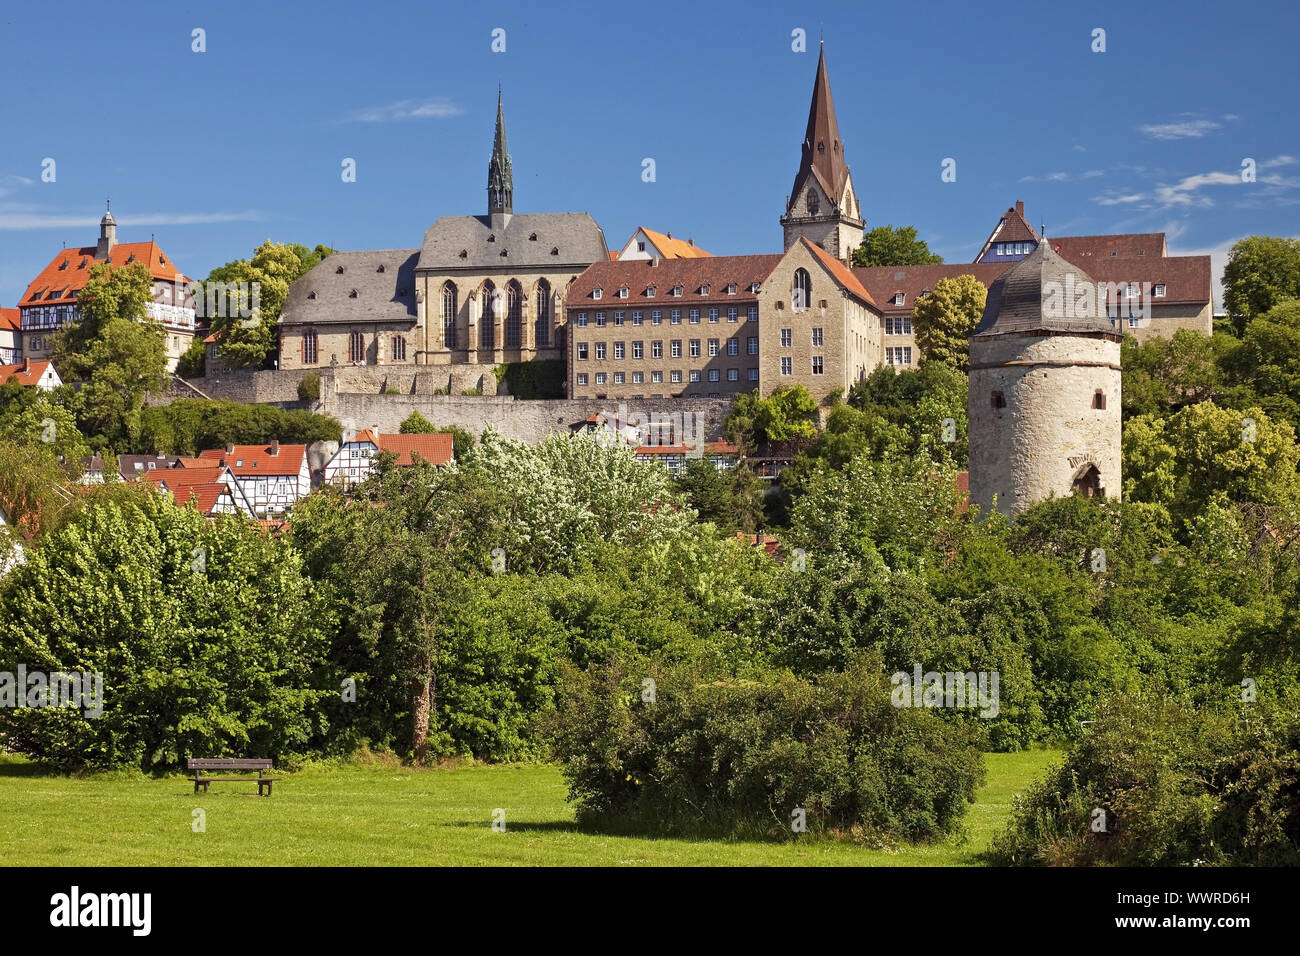 medieval old city of Warburg, East Westphalia, North Rhine-Westphalia, Germany, Europe Stock Photo